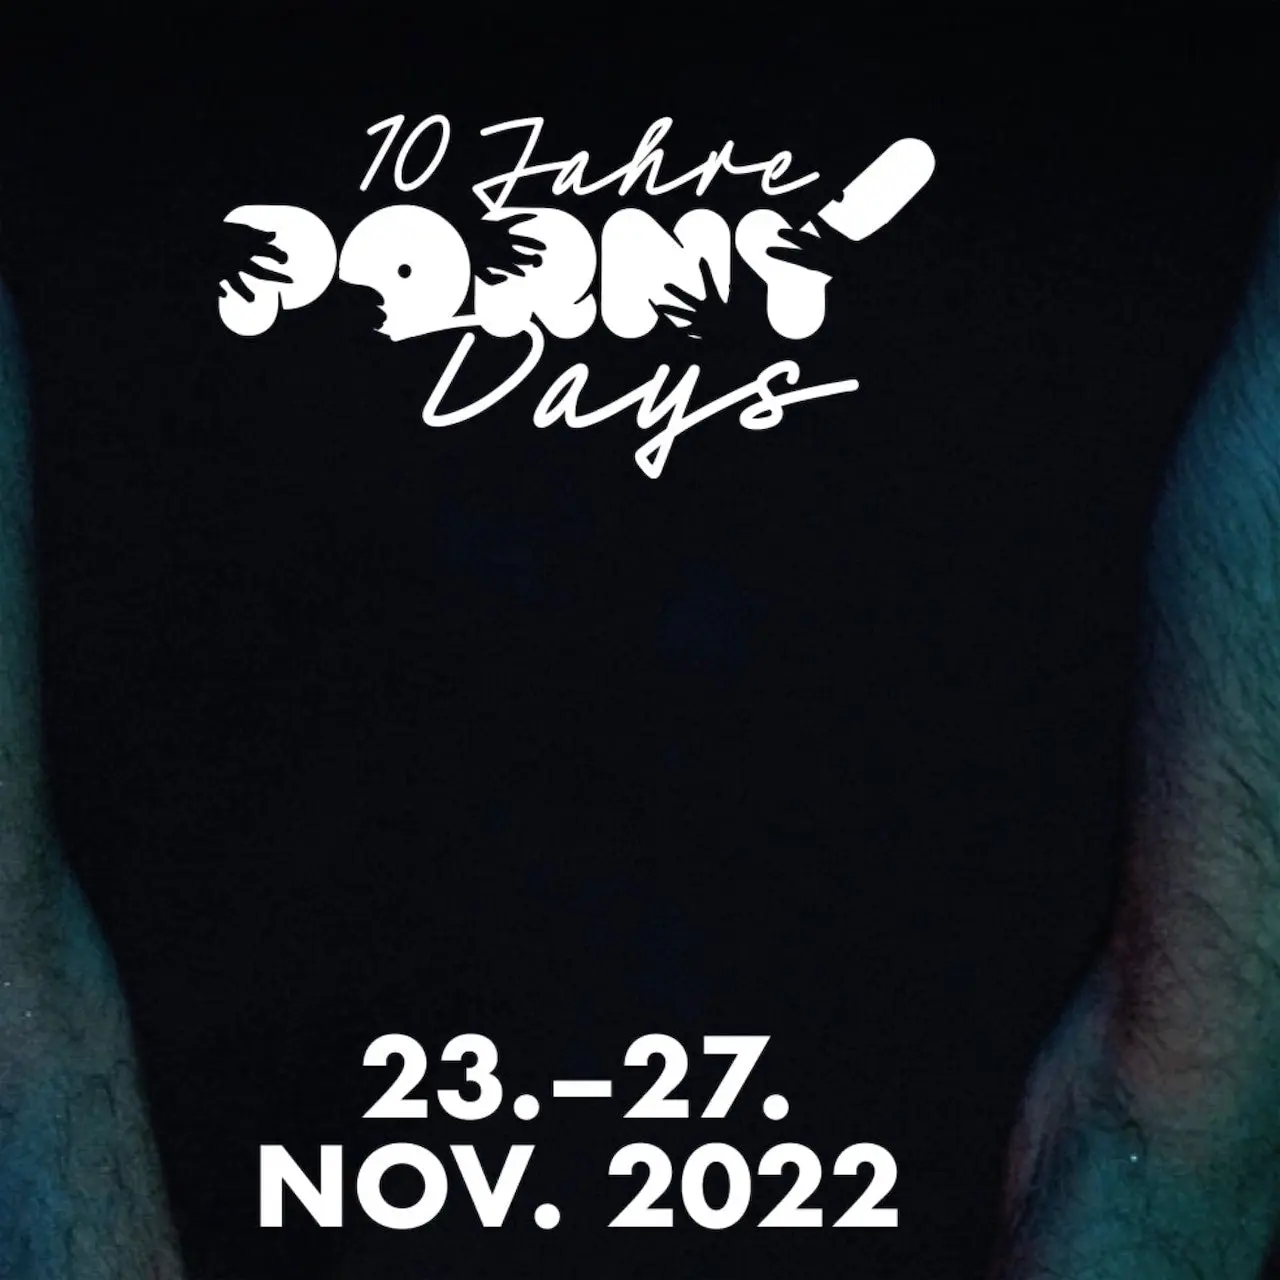 10. Porny Days: das Programm ist hier ab 7. November online!